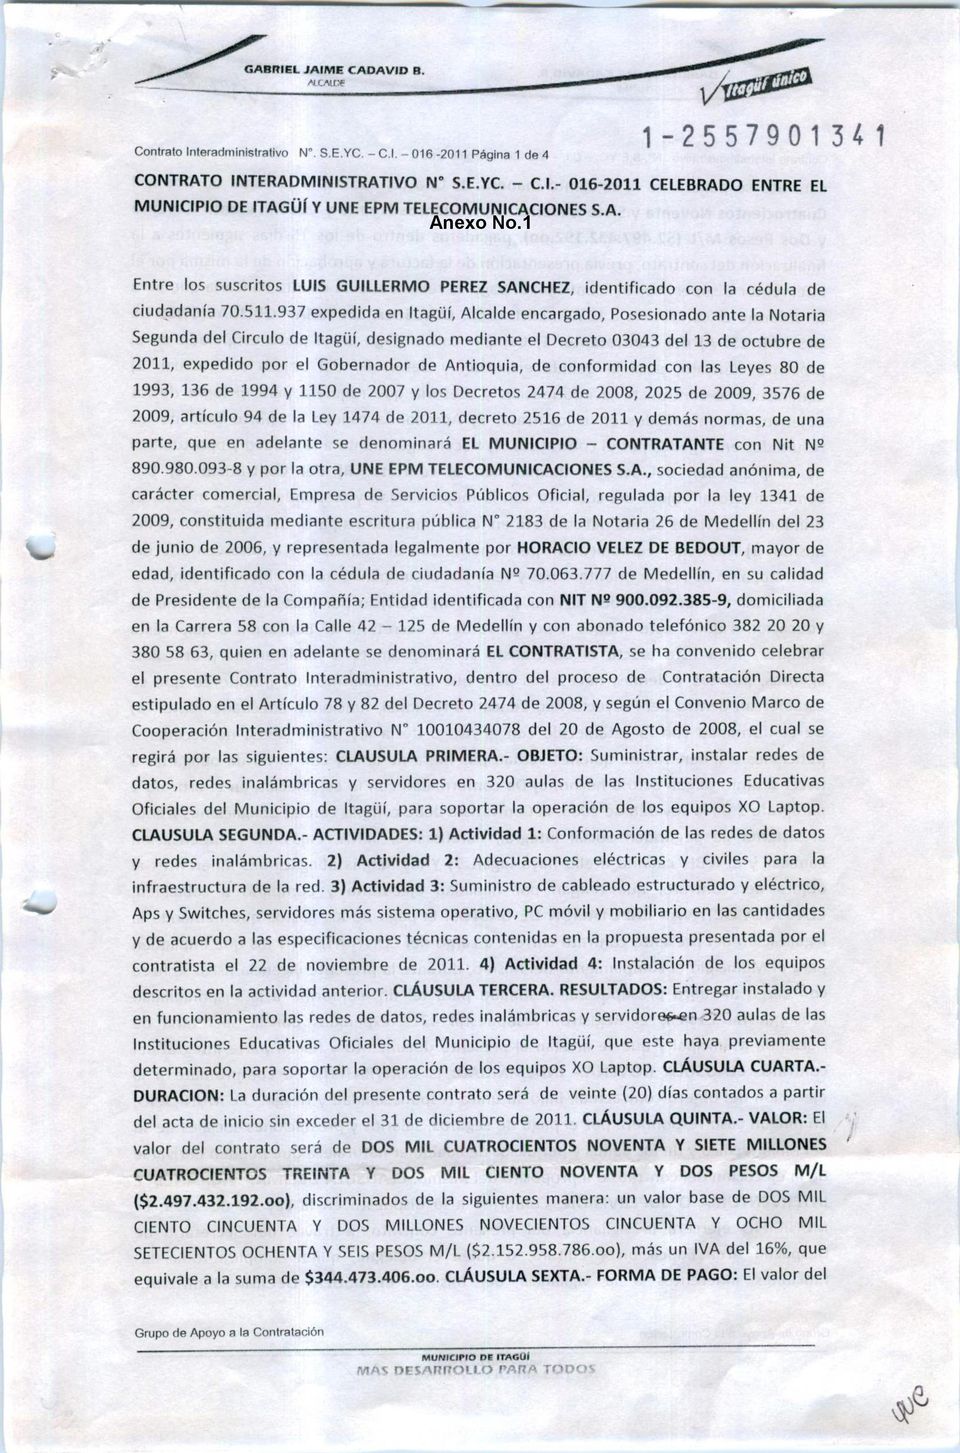 937 expedida en Itagüí, Alcalde encargado, Posesionado ante la Notaria Segunda del Circulo de Itagüí, designado mediante el Decreto 03043 del 13 de octubre de 2011, expedido por el Gobernador de